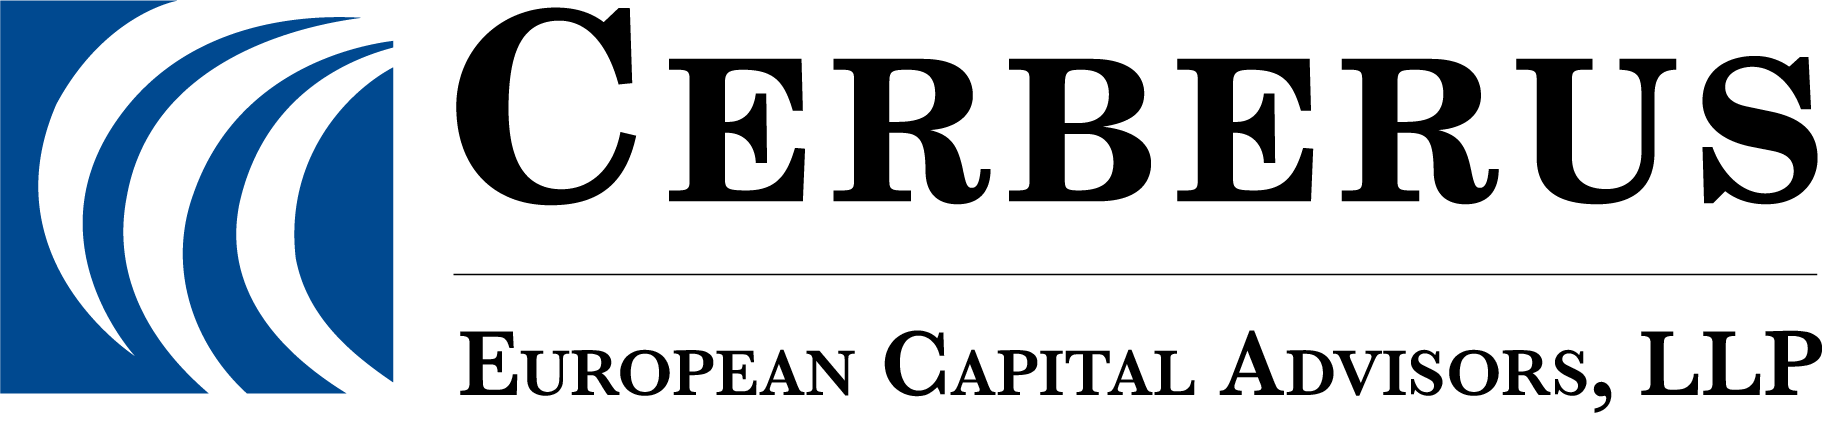 Cerberus European Investments